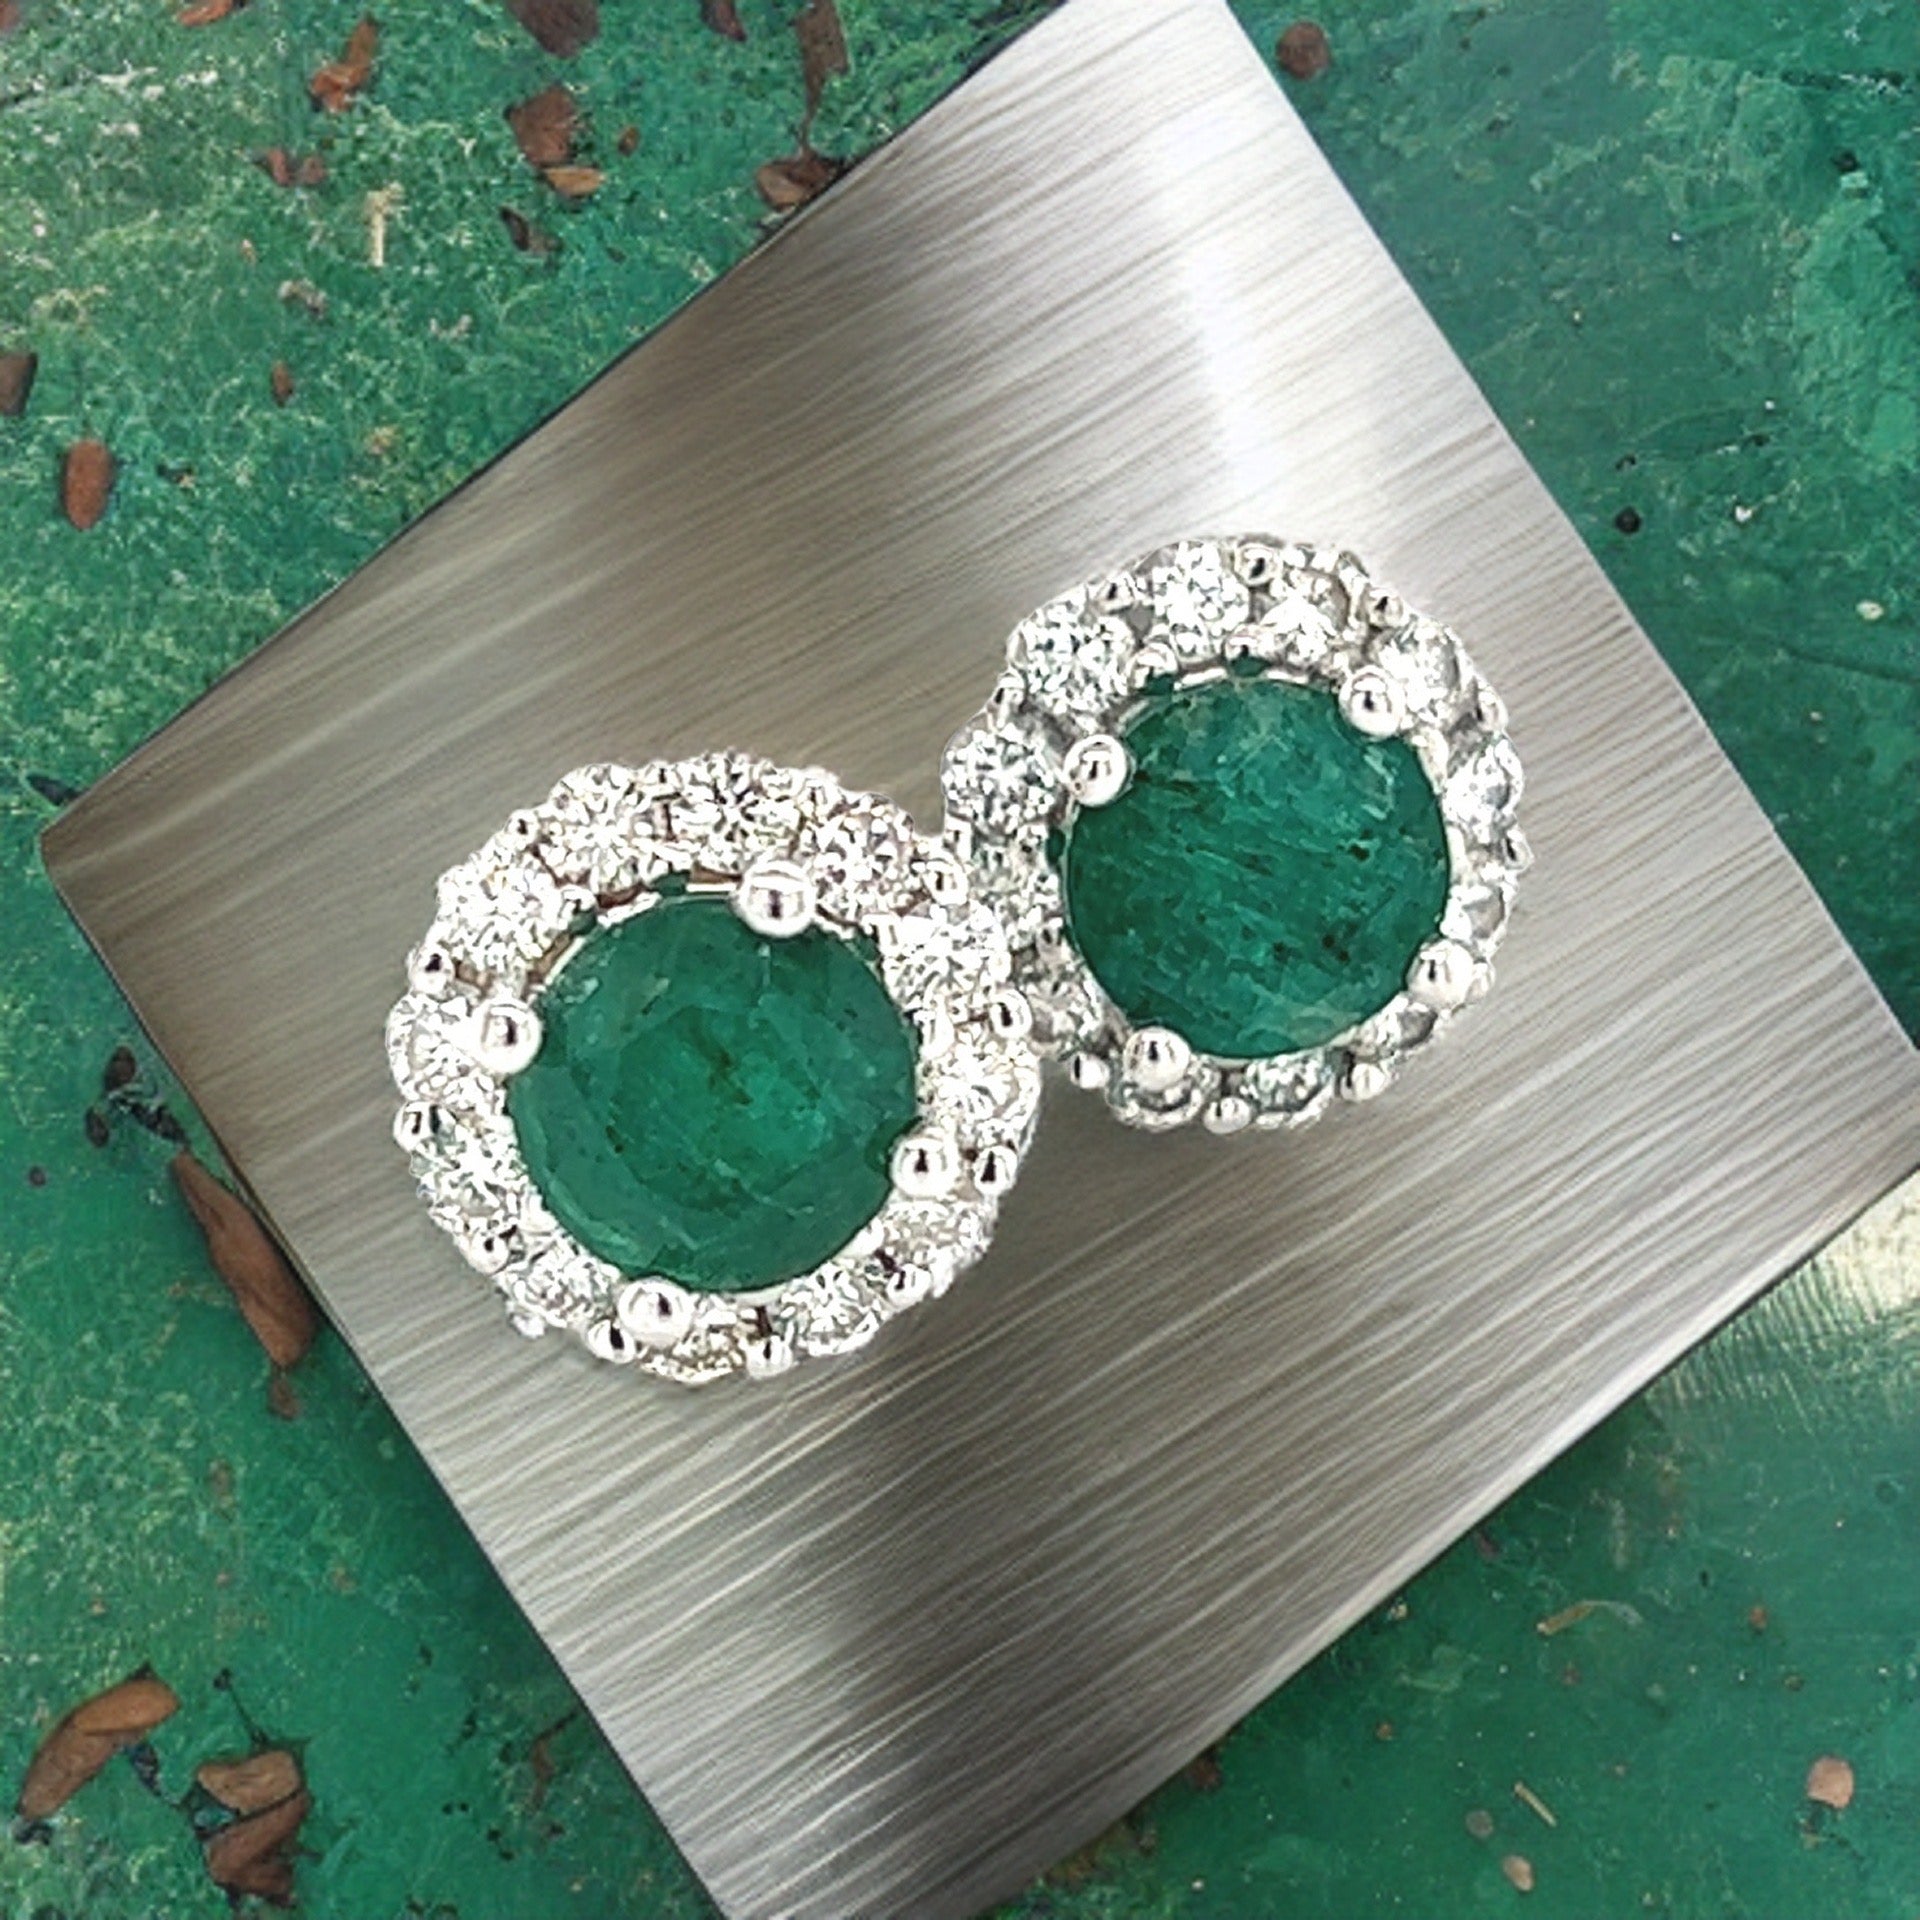 Natural Emerald Diamond Earrings 14k Gold 3.02 TCW Certified $5,490 211182 - Certified Fine Jewelry